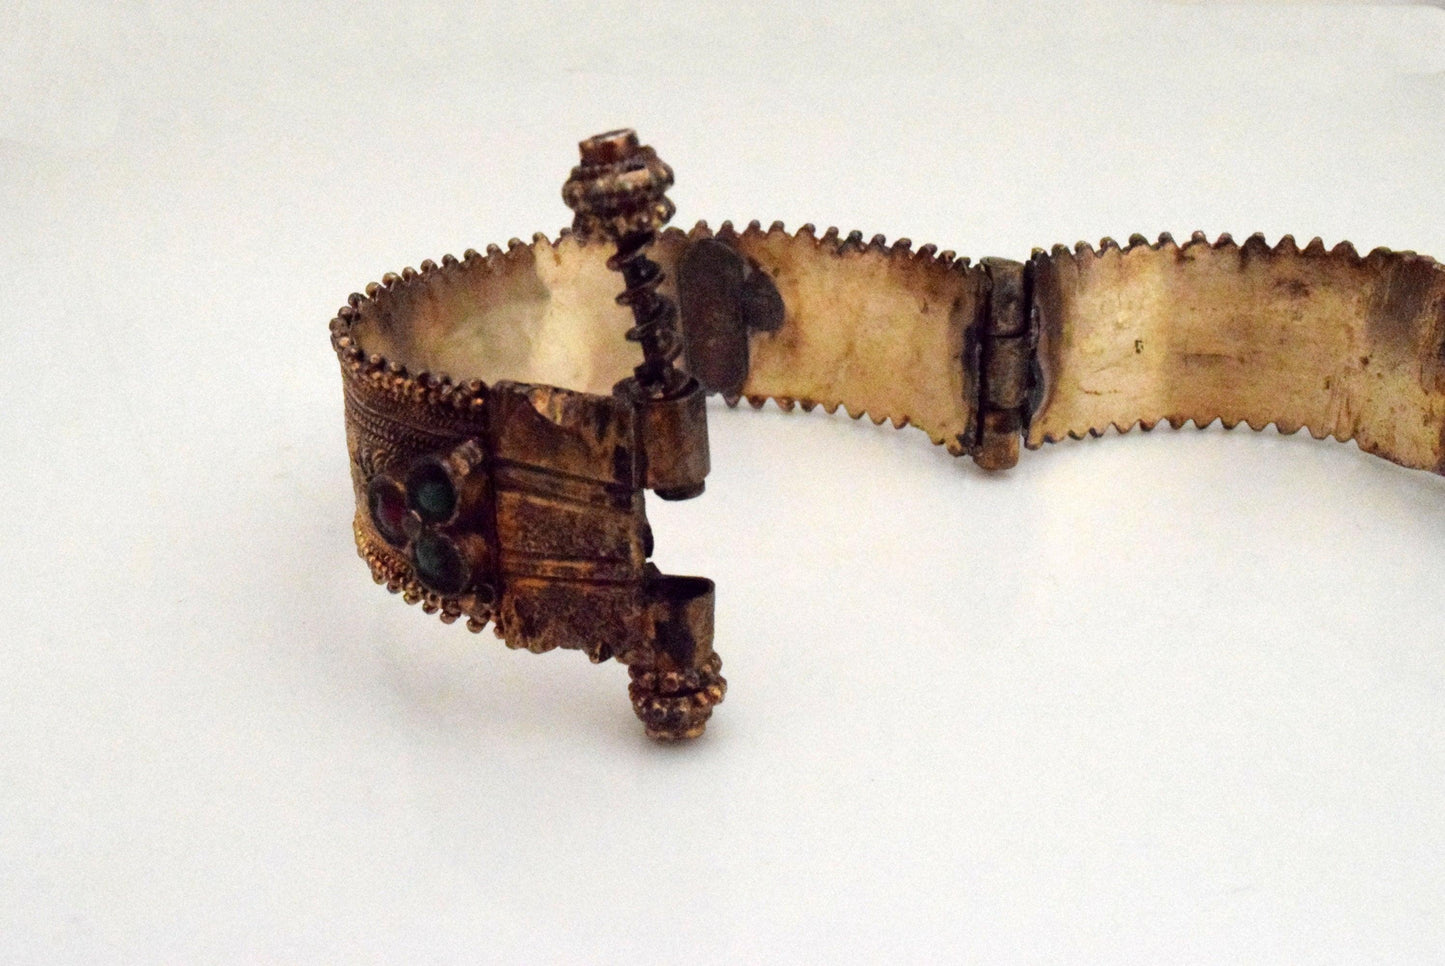 Yemeni Style Gold Gilt Silver Bracelet with Defects - Anteeka